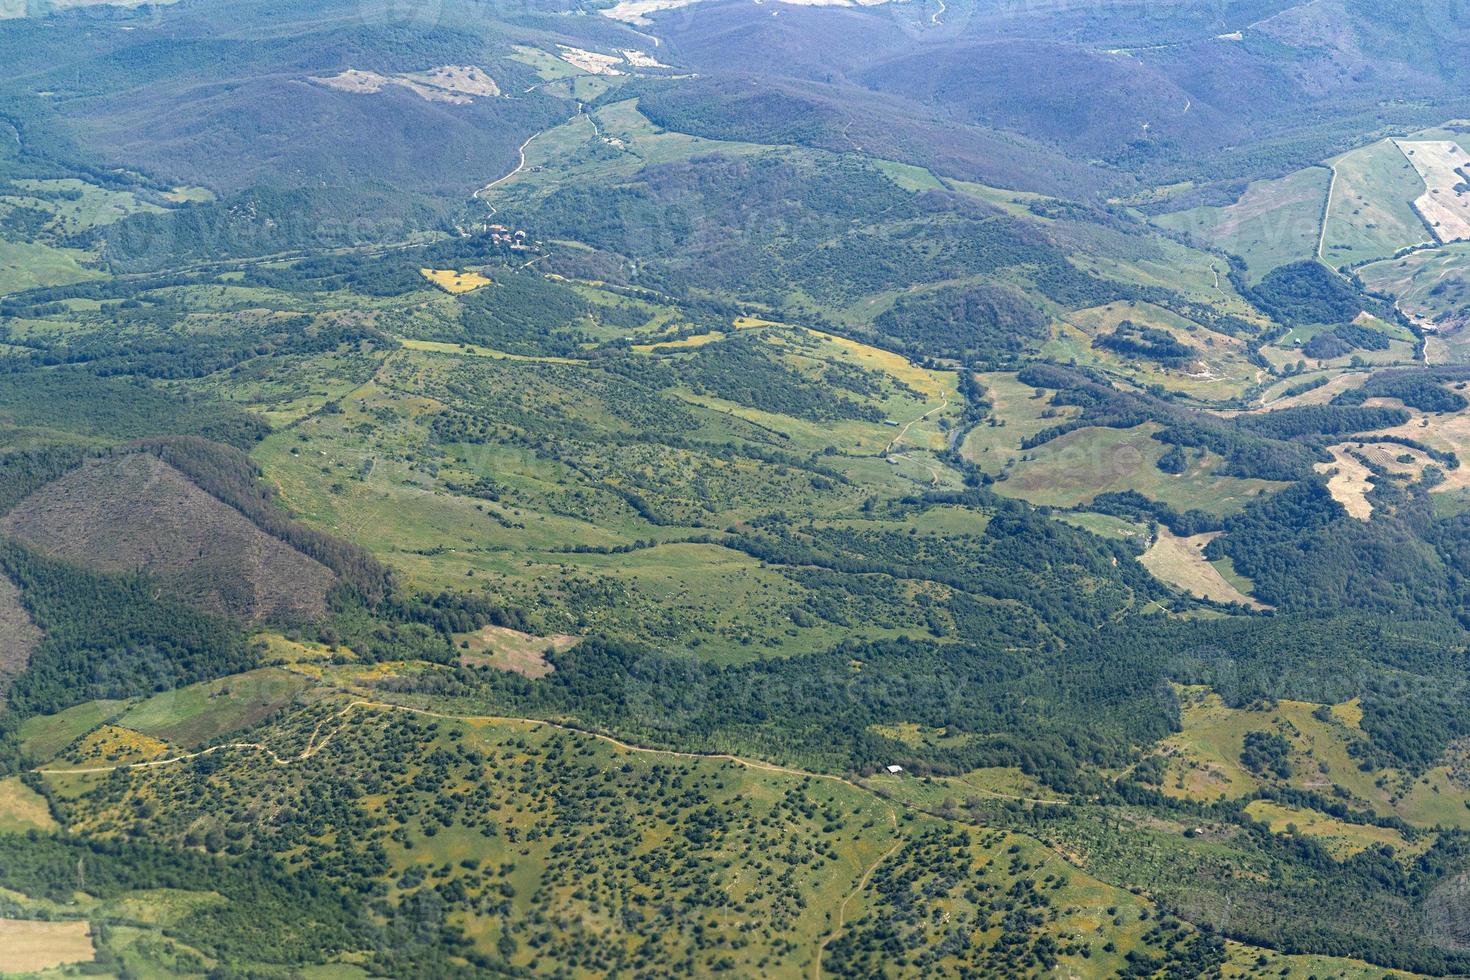 lazio región campos de cultivo colinas vista aérea foto